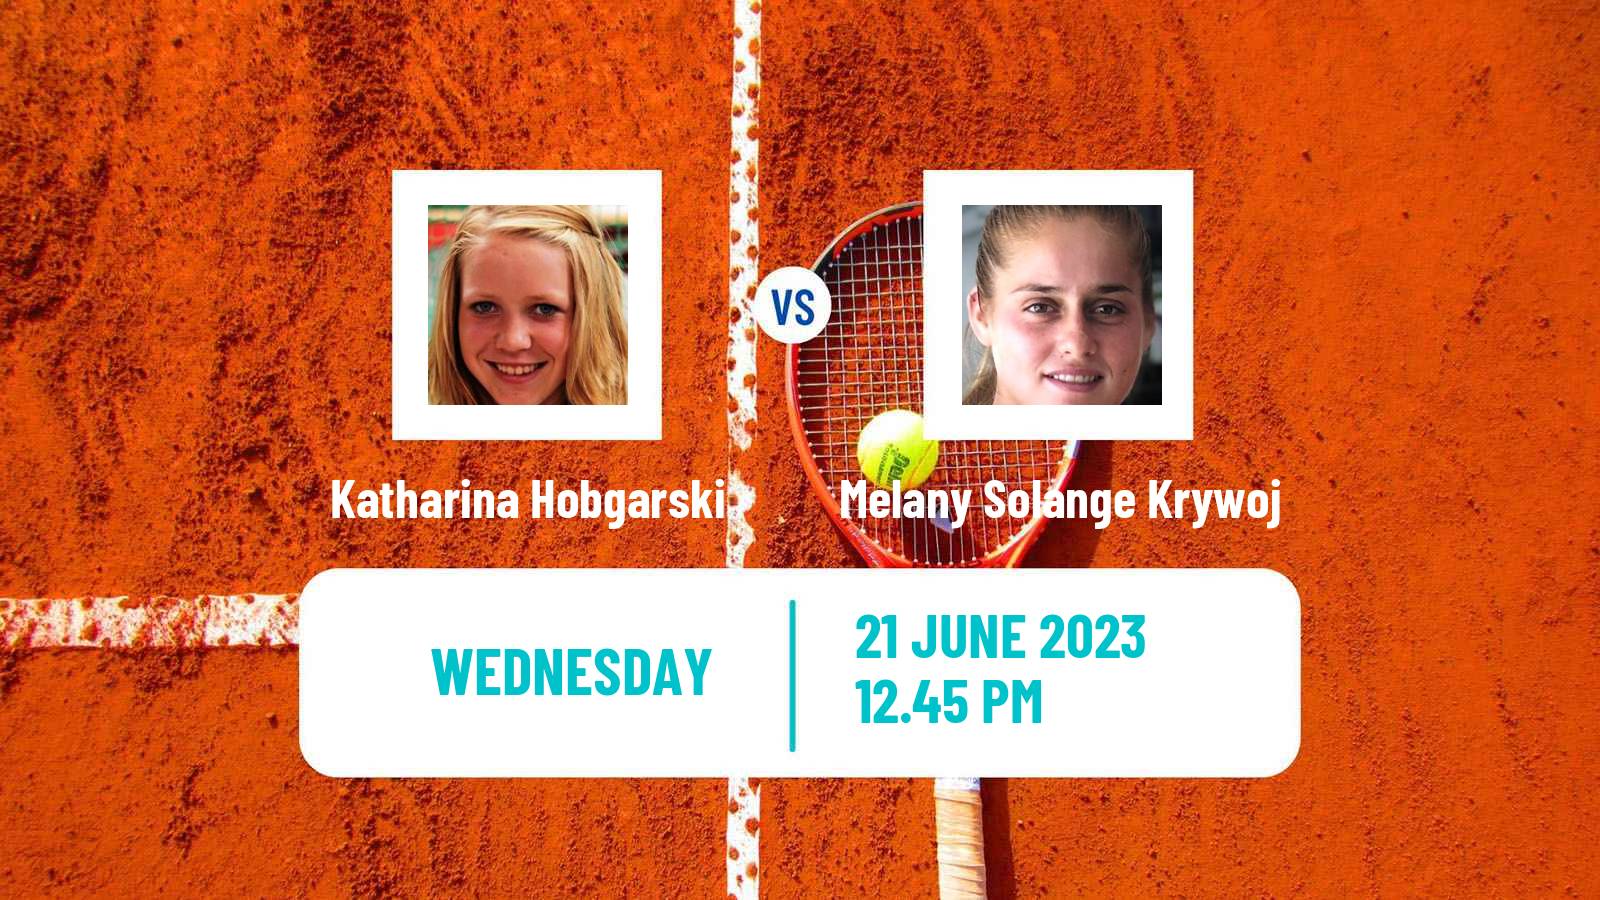 Tennis ITF W25 Santo Domingo 3 Women Katharina Hobgarski - Melany Solange Krywoj